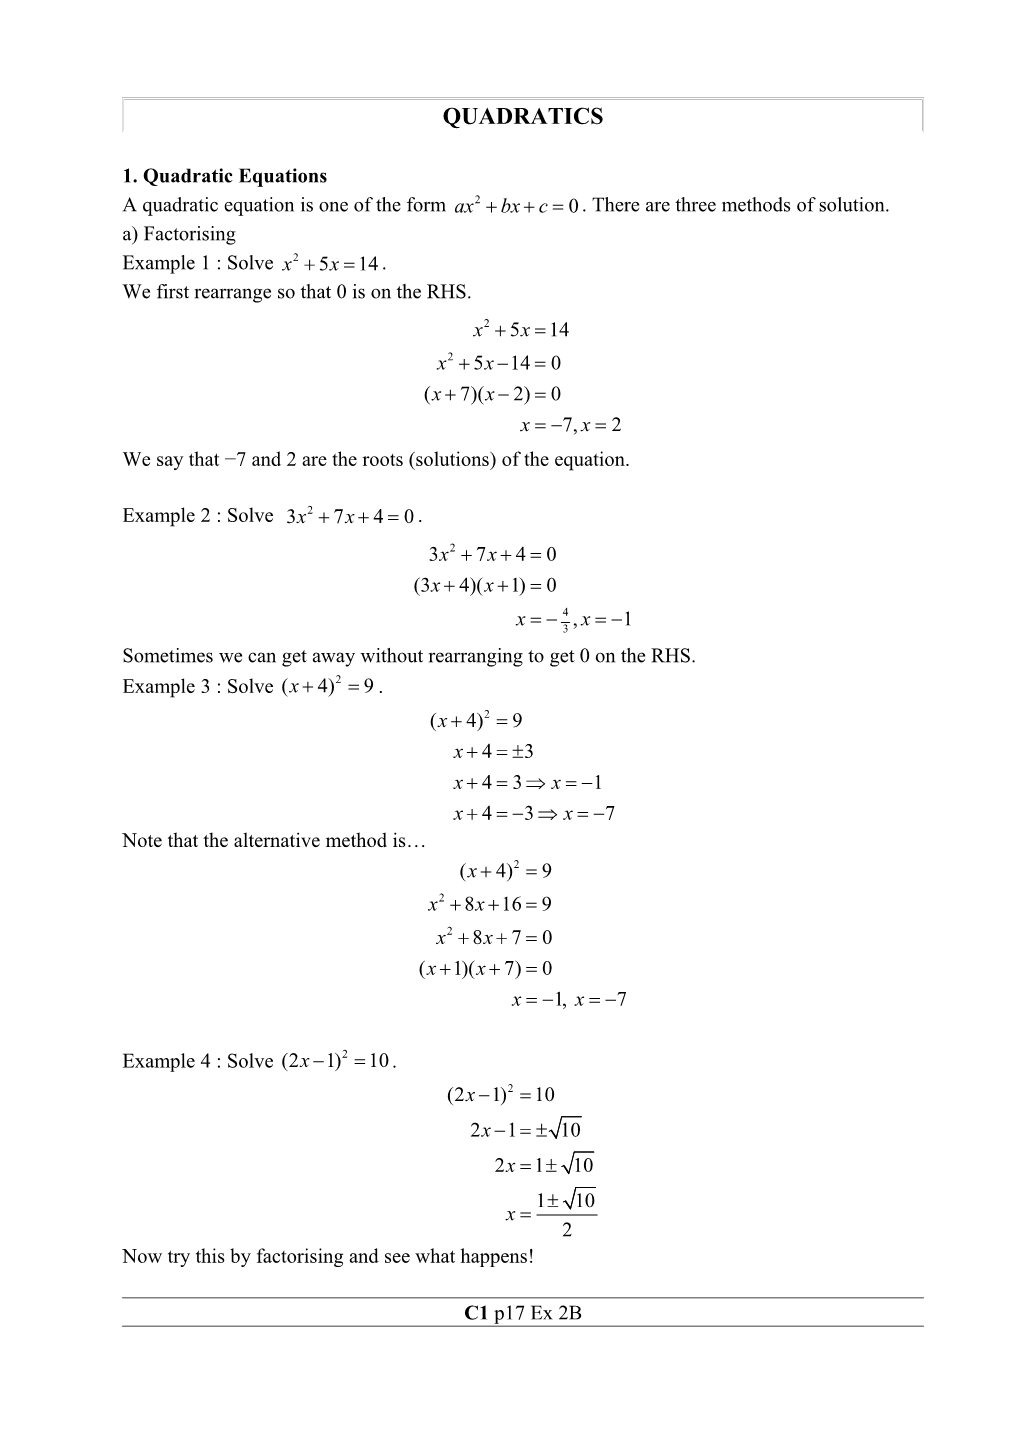 1. Quadratic Equations